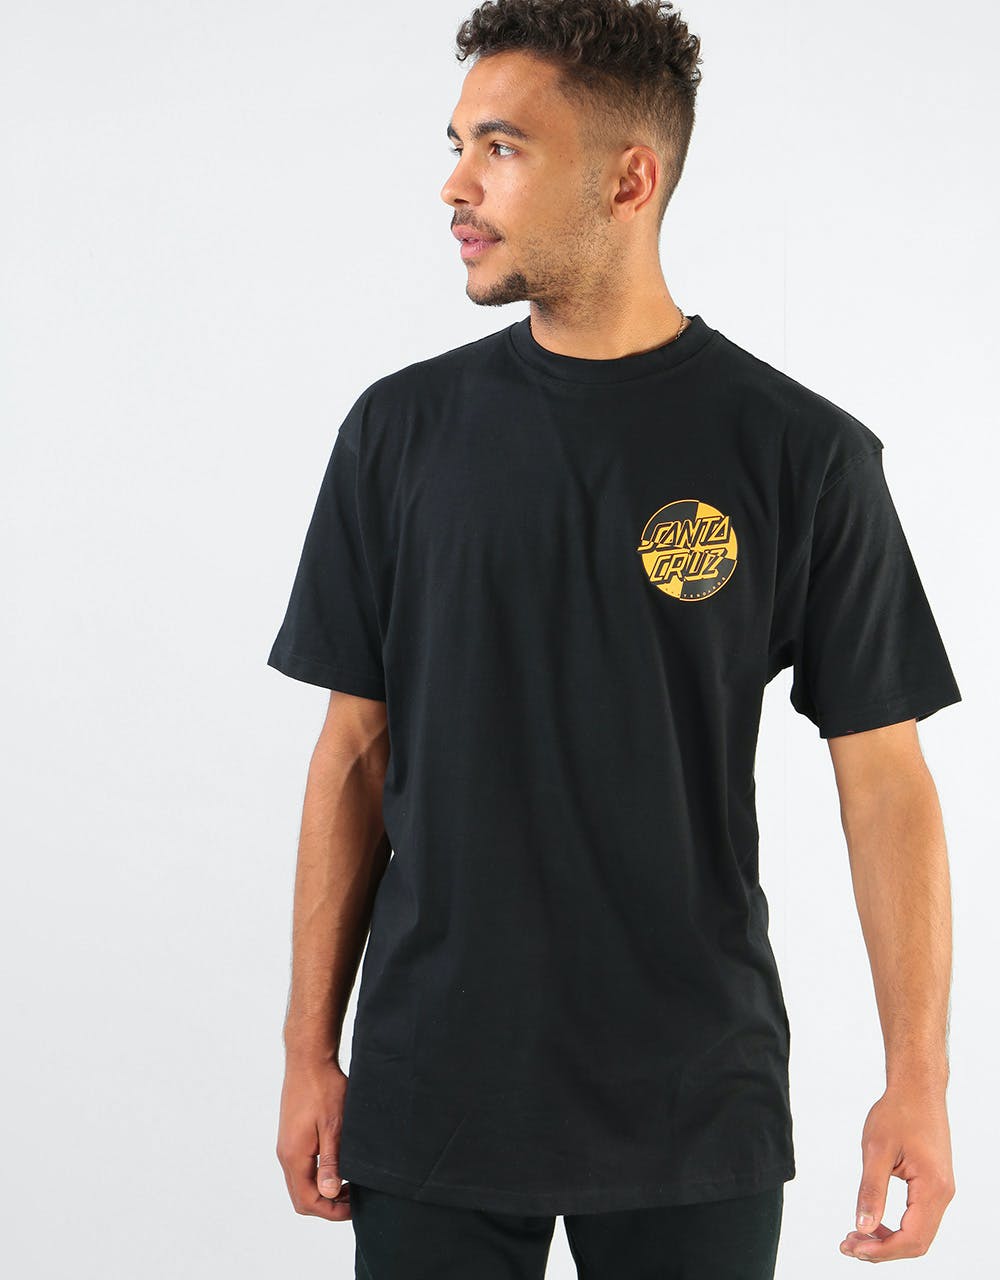 Santa Cruz Crash Dot T-Shirt - Black